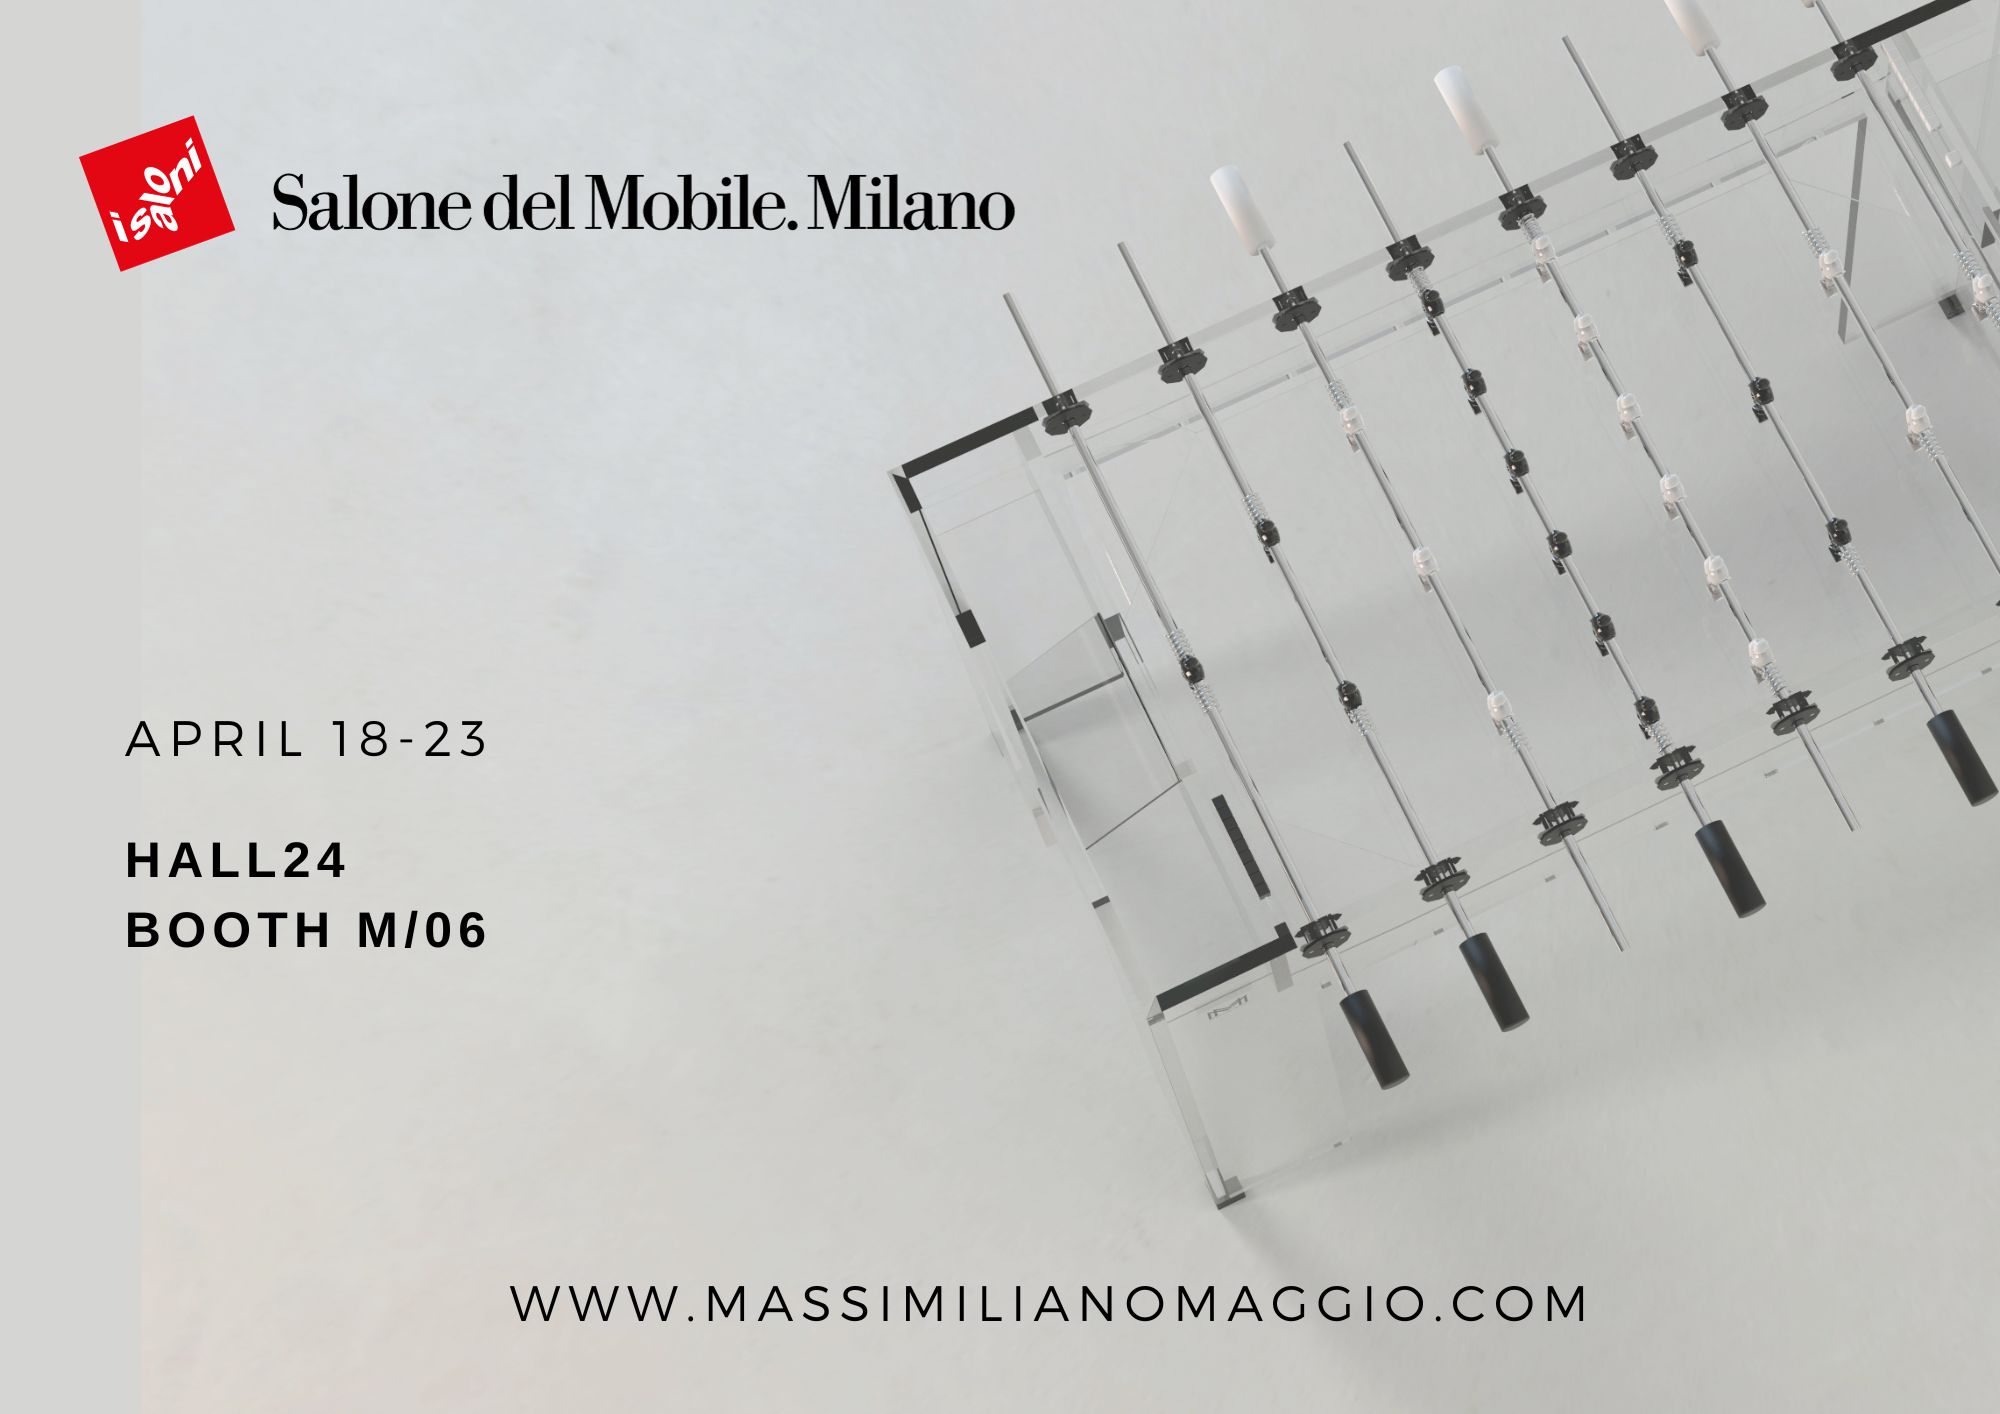 Acrylic Game Tables Collection Massimiliano Maggio Salone del Mobile